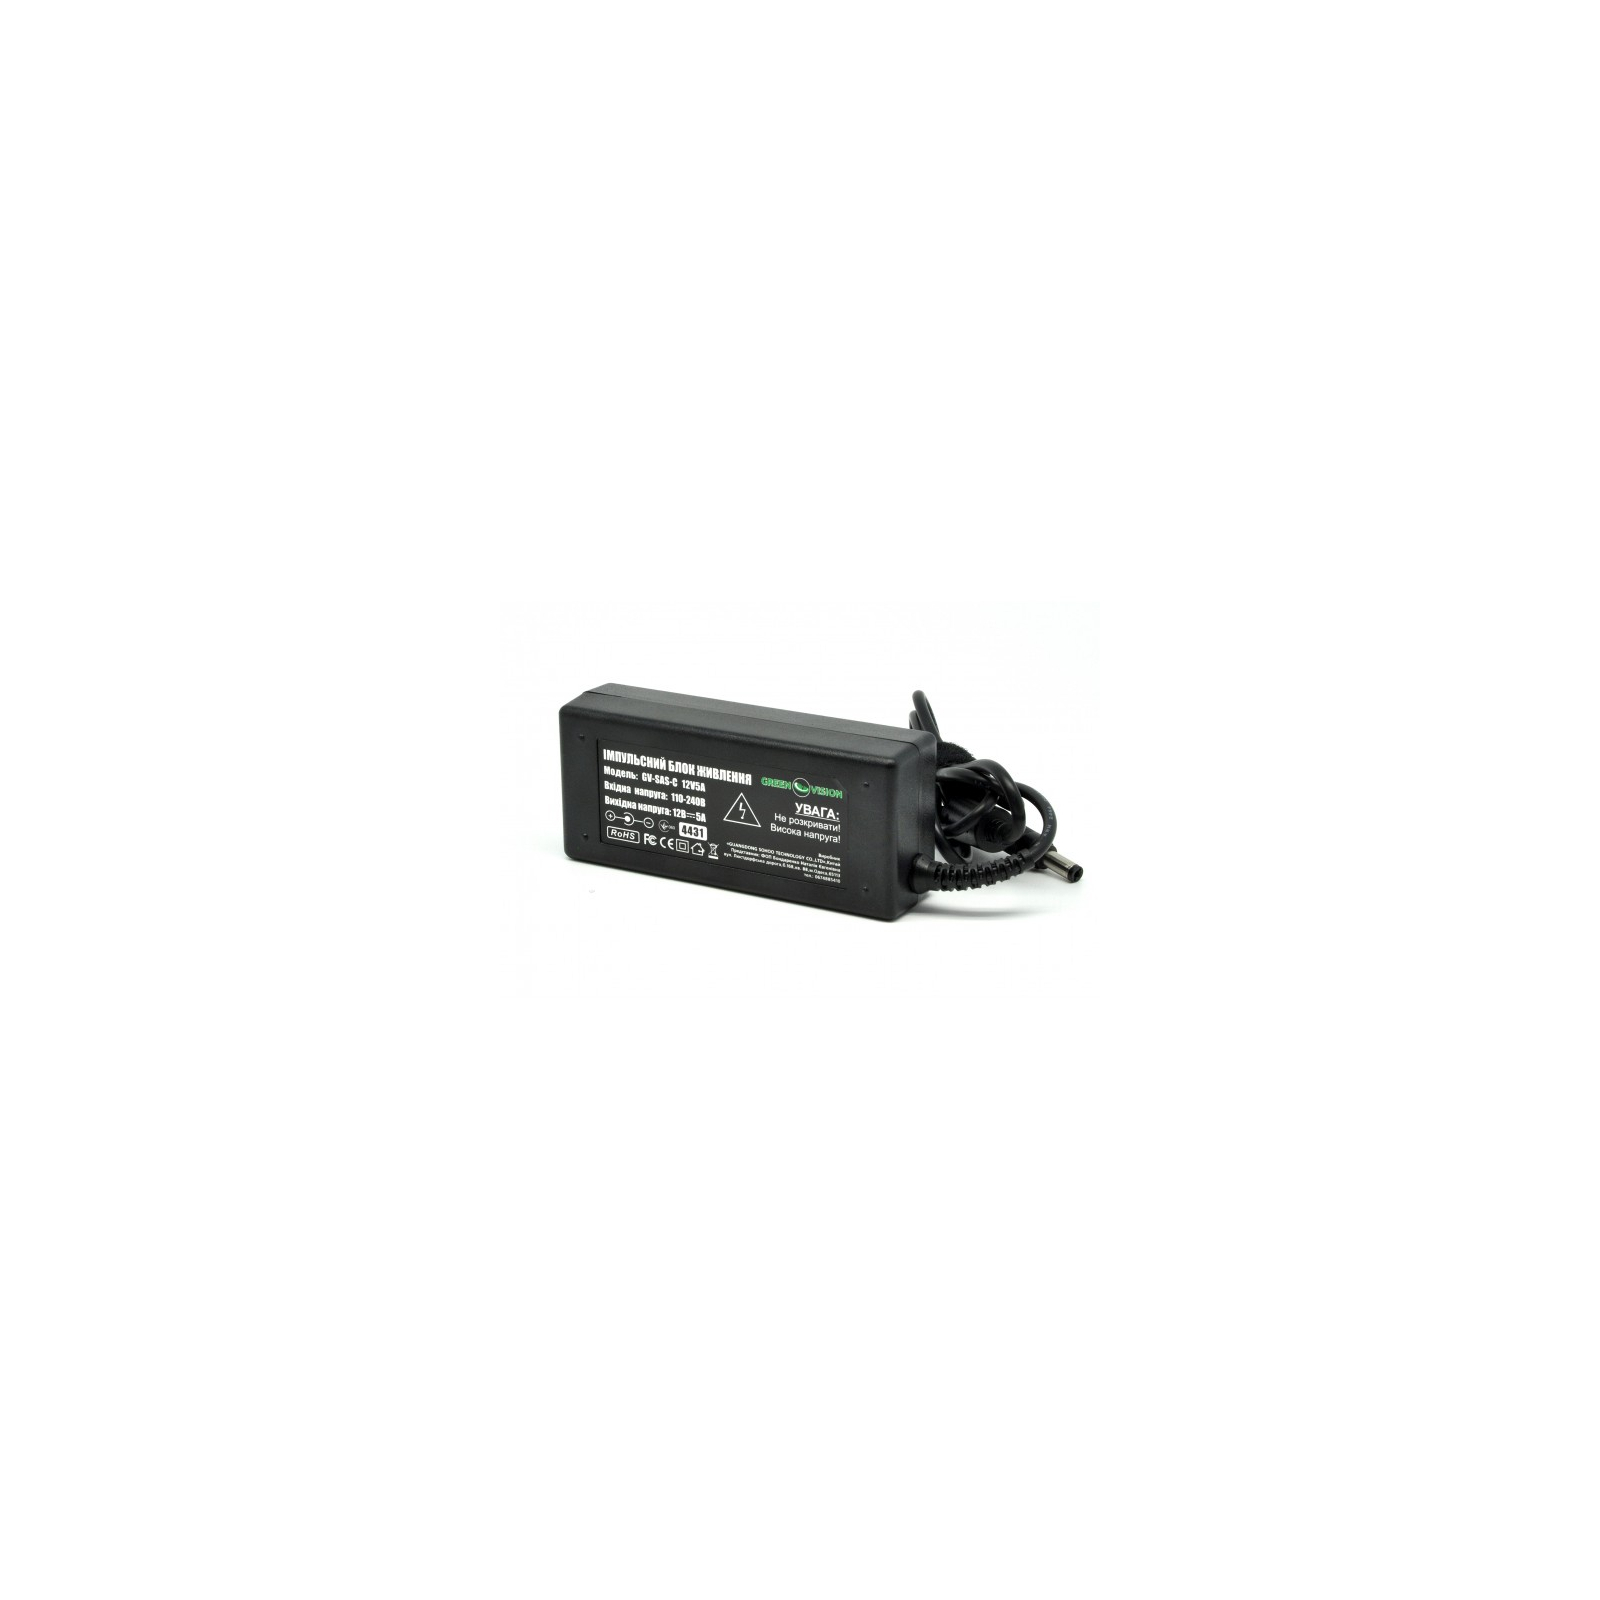 Блок питания для систем видеонаблюдения Greenvision GV-SAS-C 12V5A (60W) (4431)